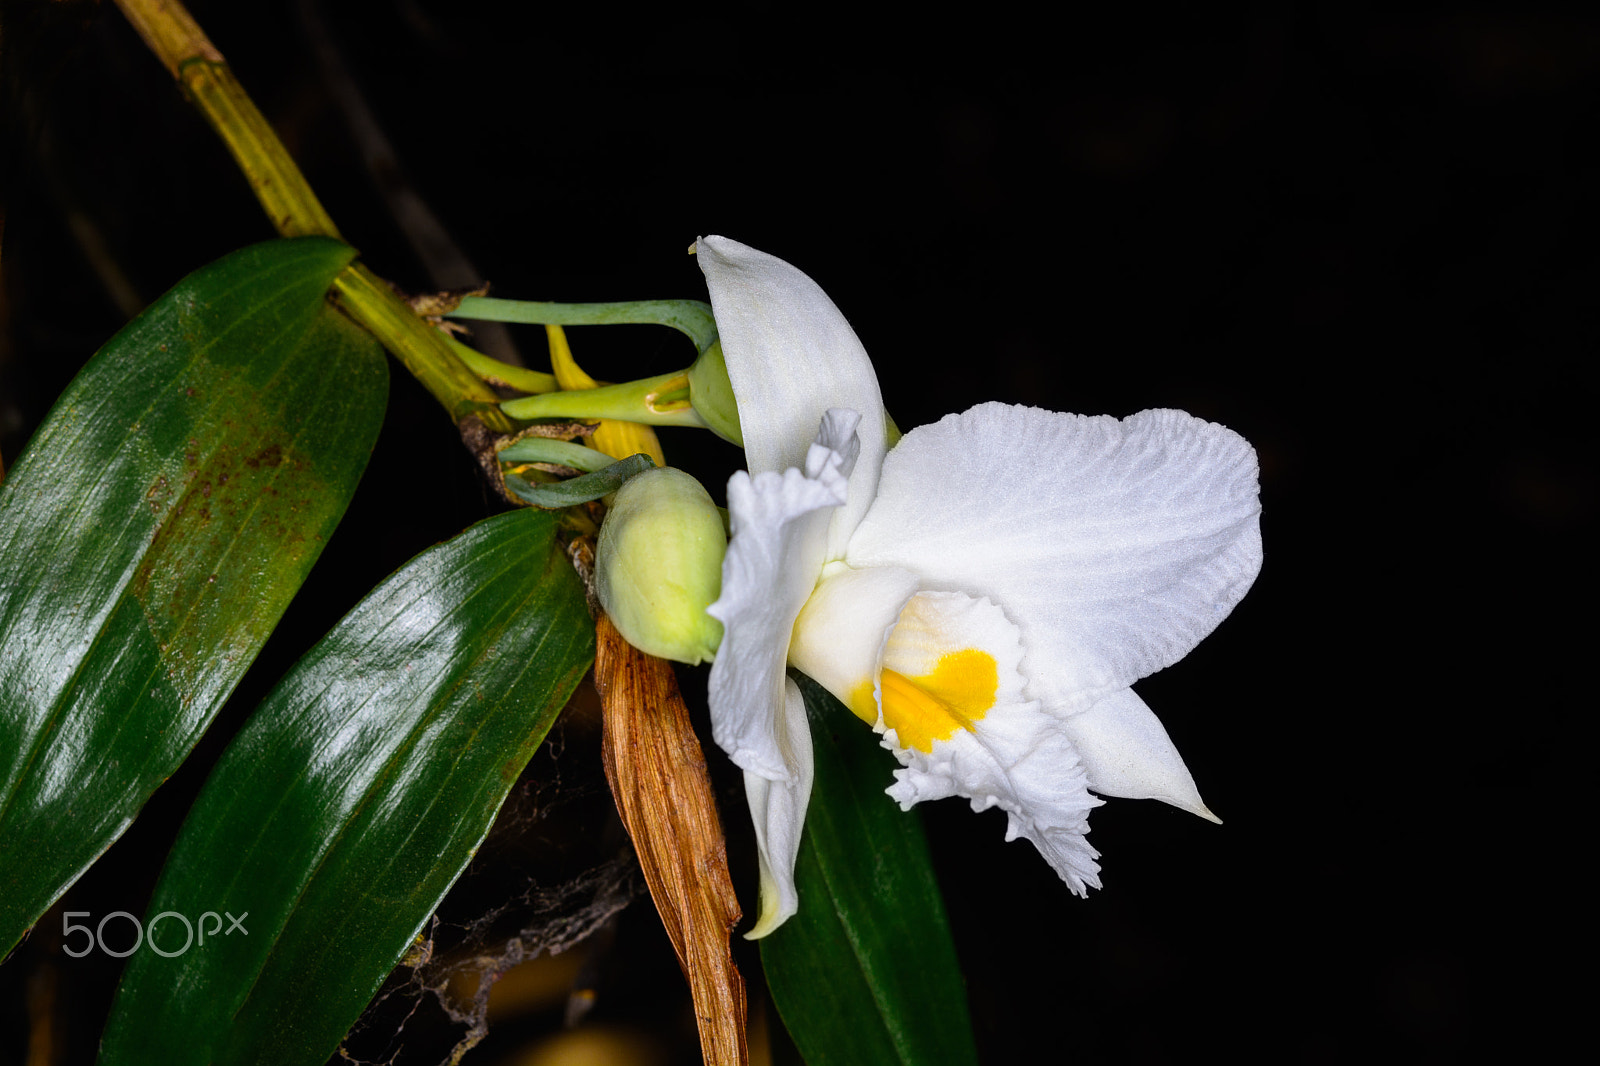 Nikon D5200 sample photo. Dendrobium infundibulum lindl. photography